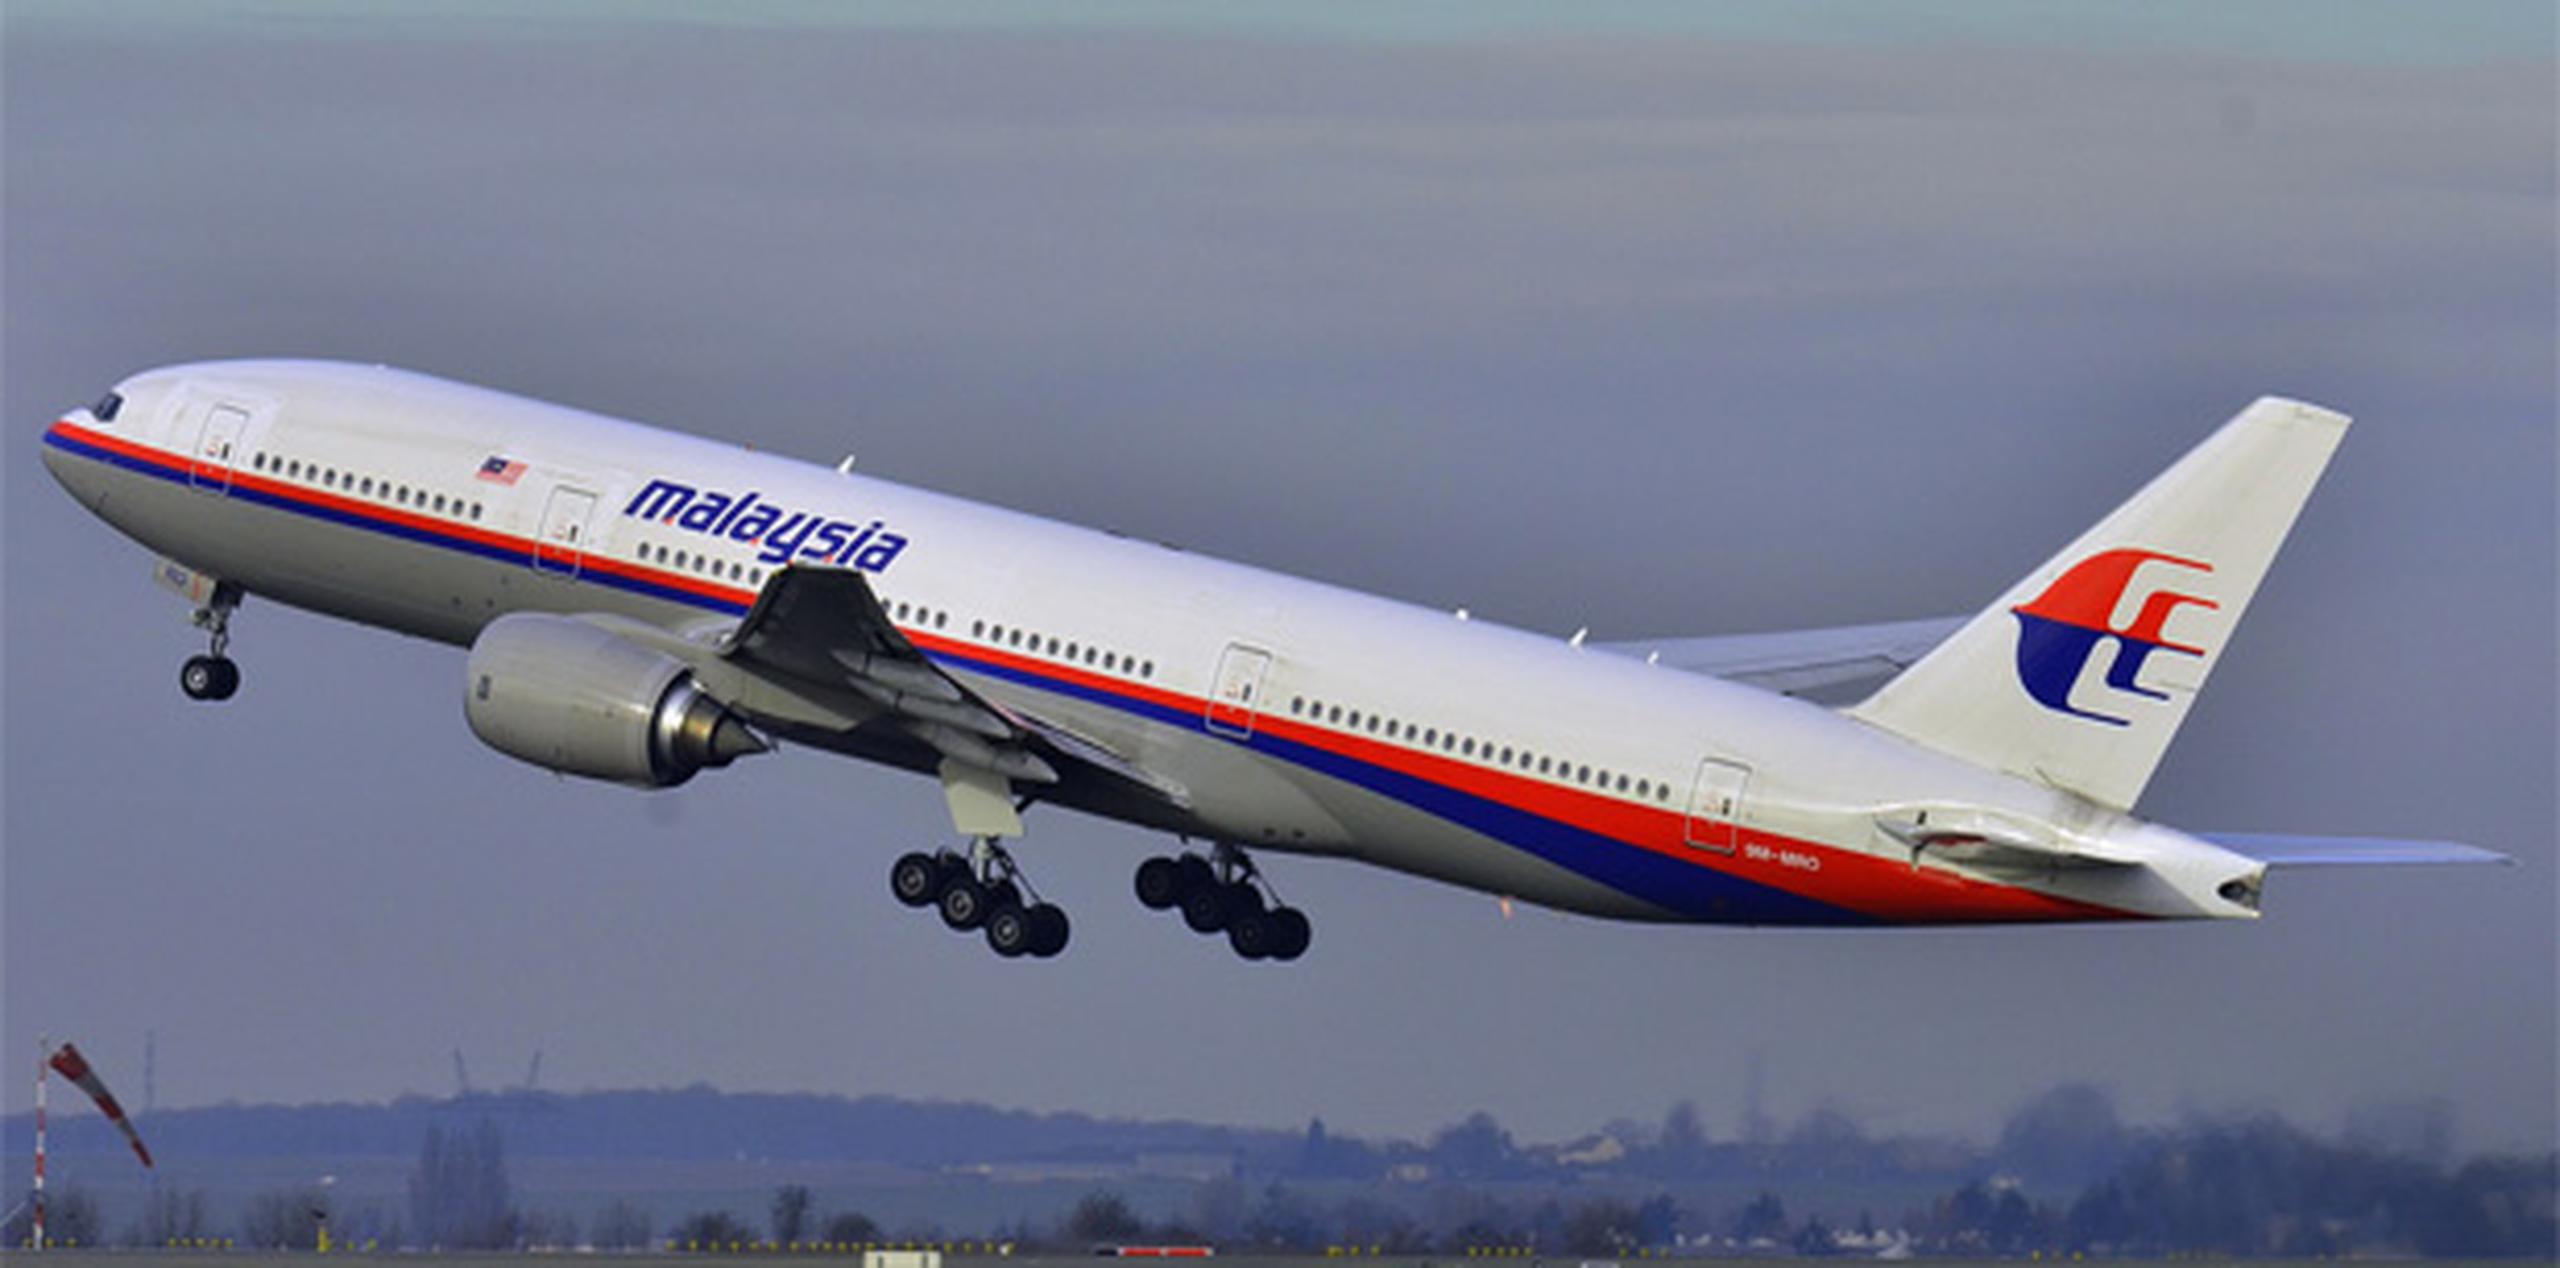 El avión desapareció la mañana del 8 de marzo del año pasado cuando volaba de Kuala Lumpur a Beijing con 239 personas a bordo.